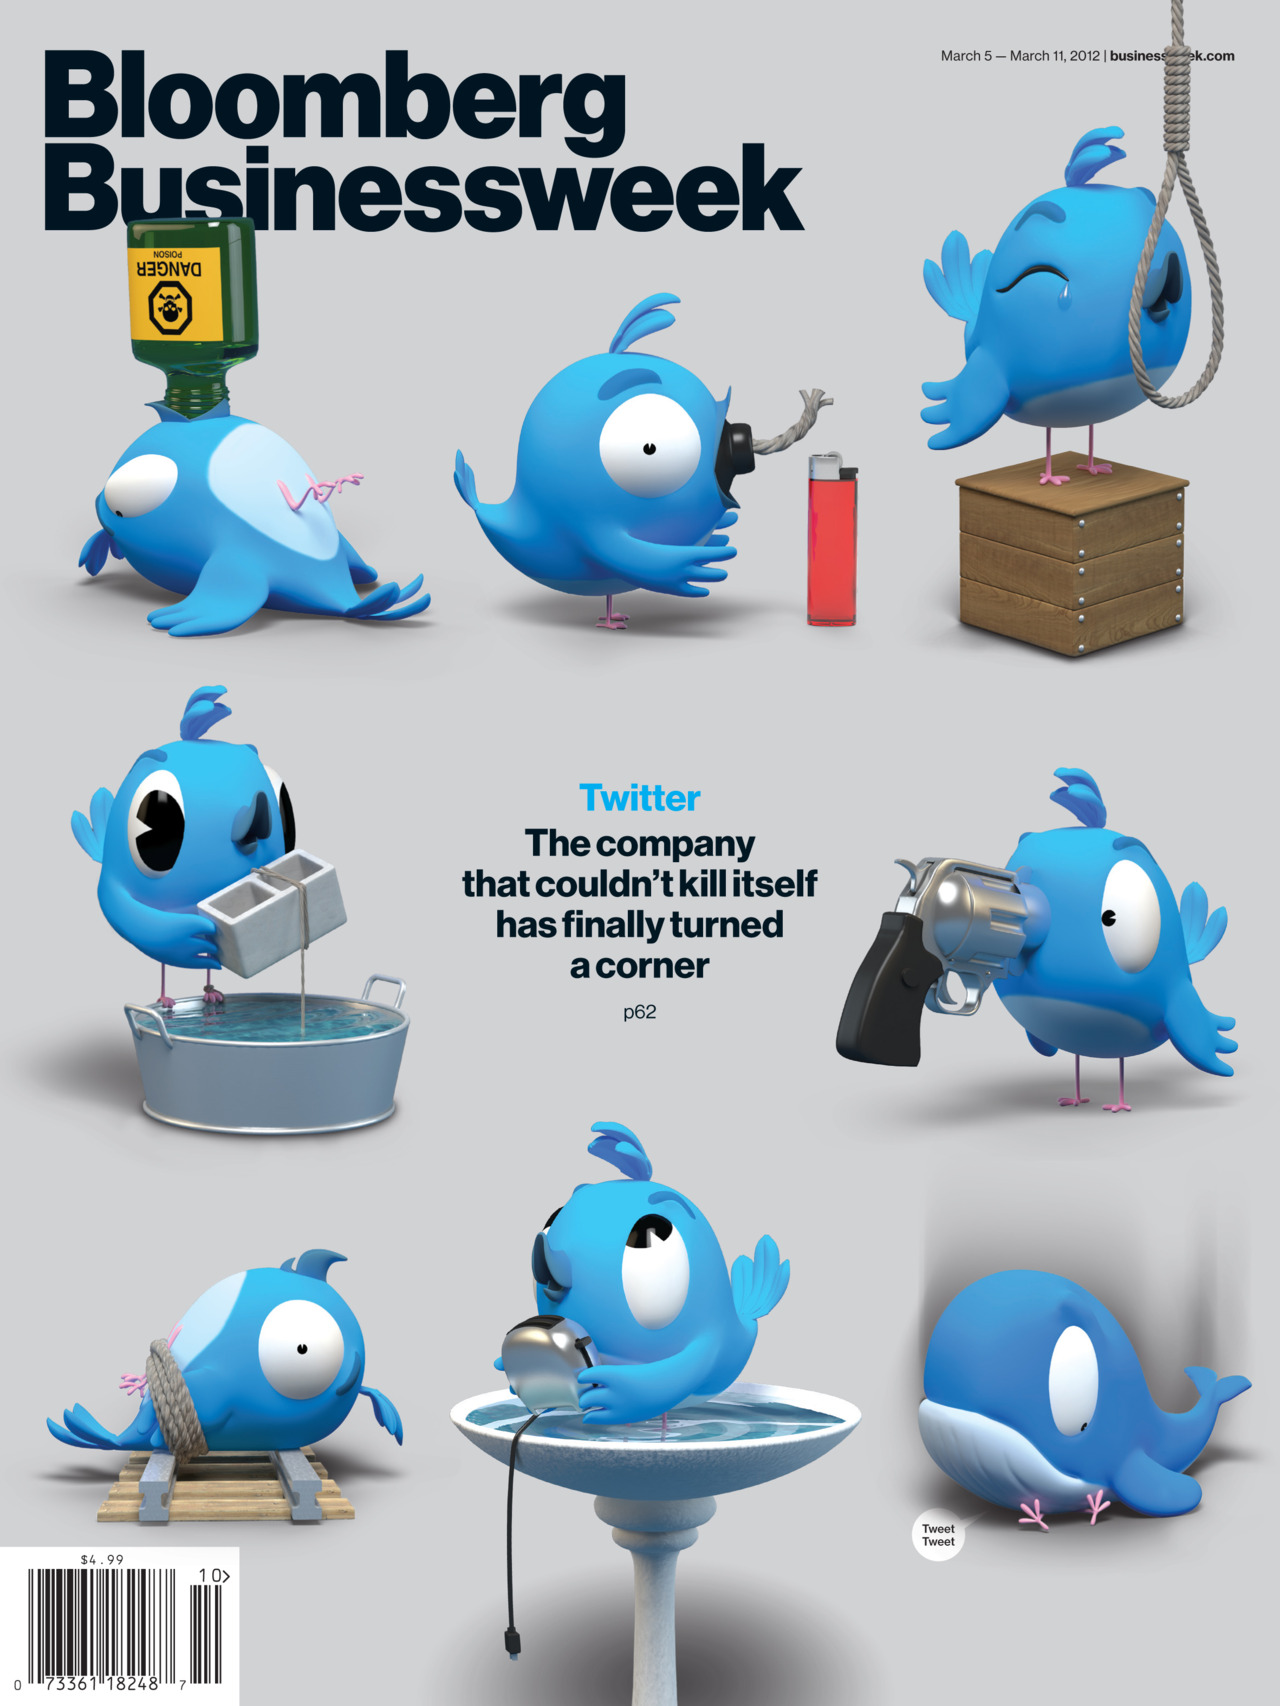 Twitter-Bird-Bloomberg-Businessweek-tumblr.jpg